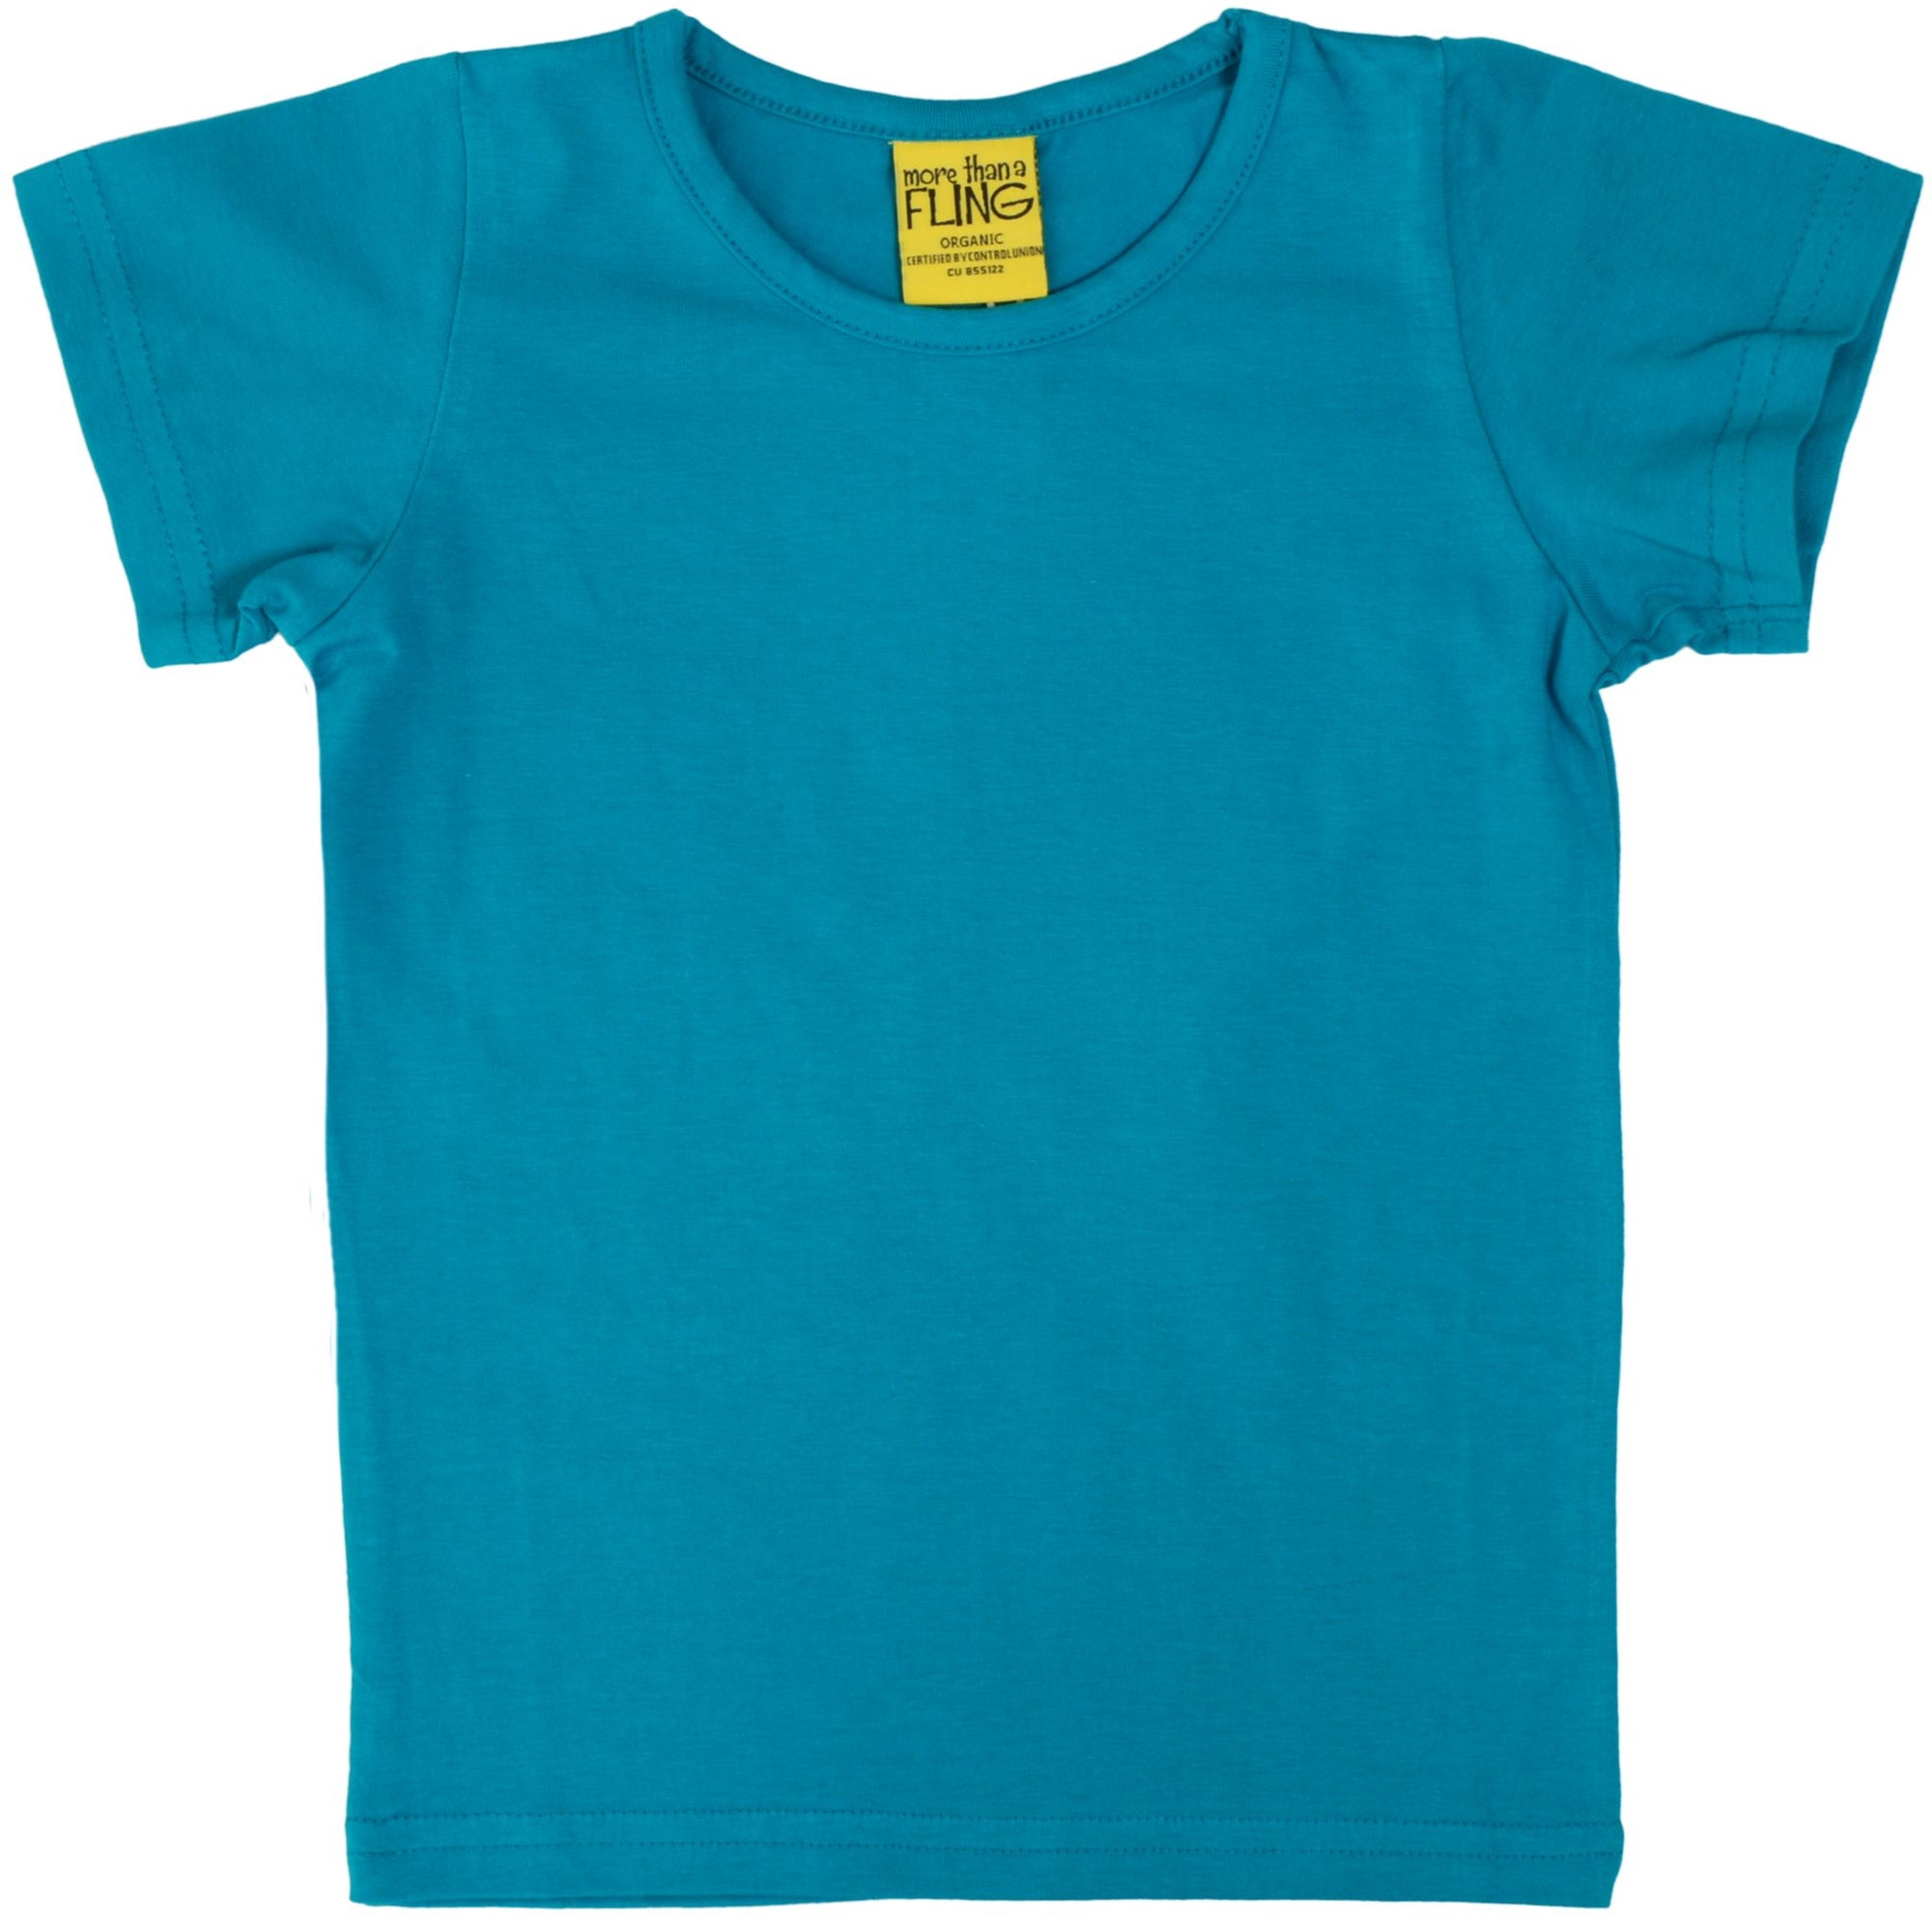 More Than A Fling T Shirt Teal - Shirt Teal Blauwgroen